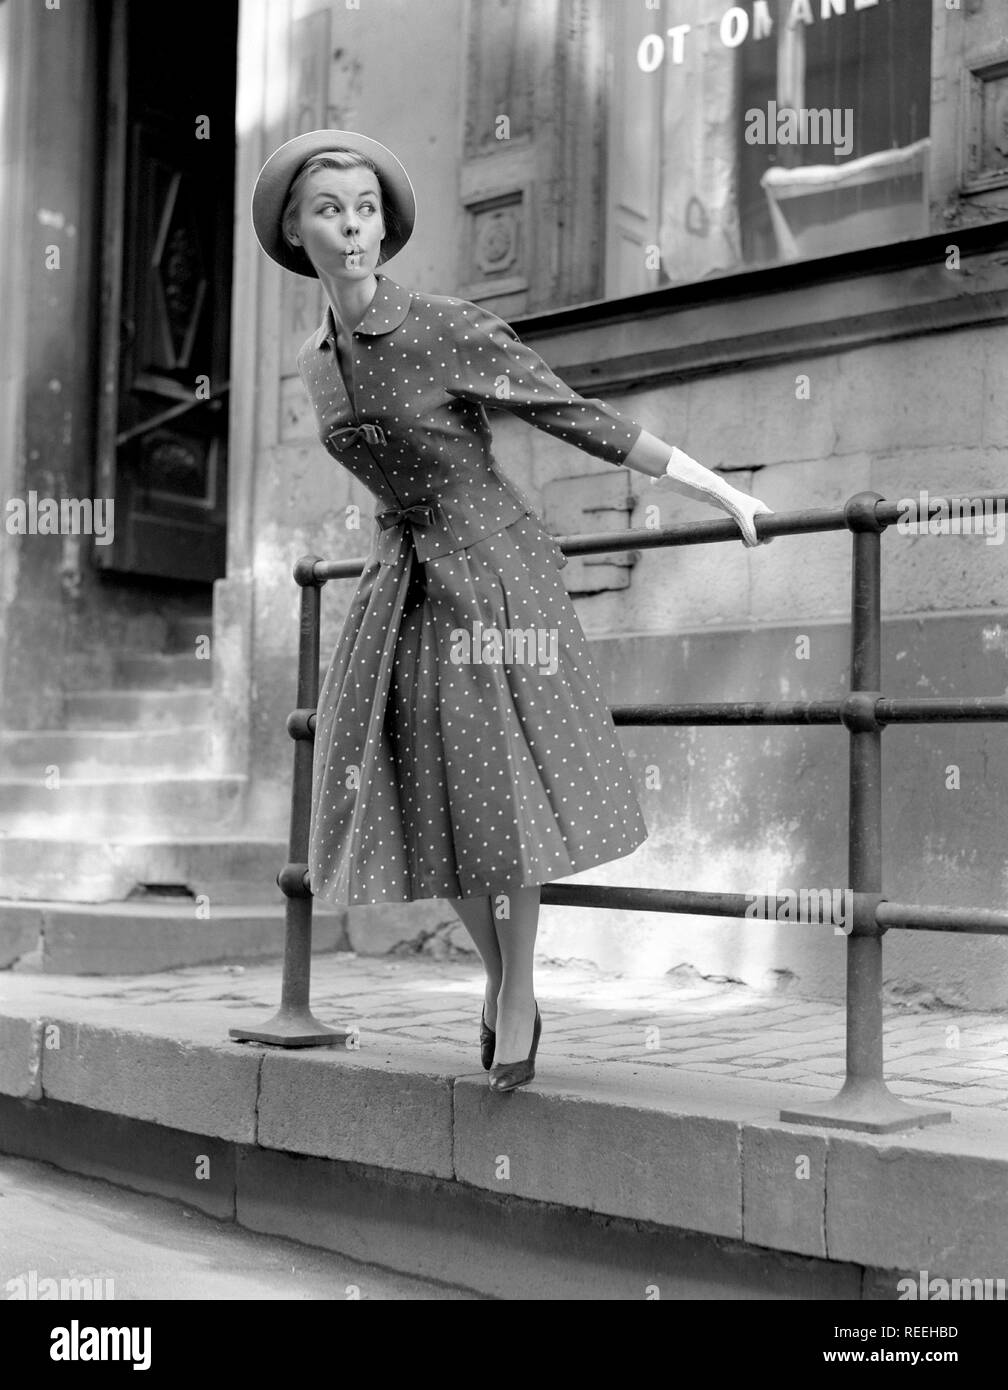 Mode in den 50er Jahren. Eine junge Frau trägt eine typische 50er Jahre Kleid. Das Muster ist übersät und die Höhe und Breite ist typisch für die Dekade. Schweden 1950. Foto Kristoffersson Ref315 A-16 Stockfoto